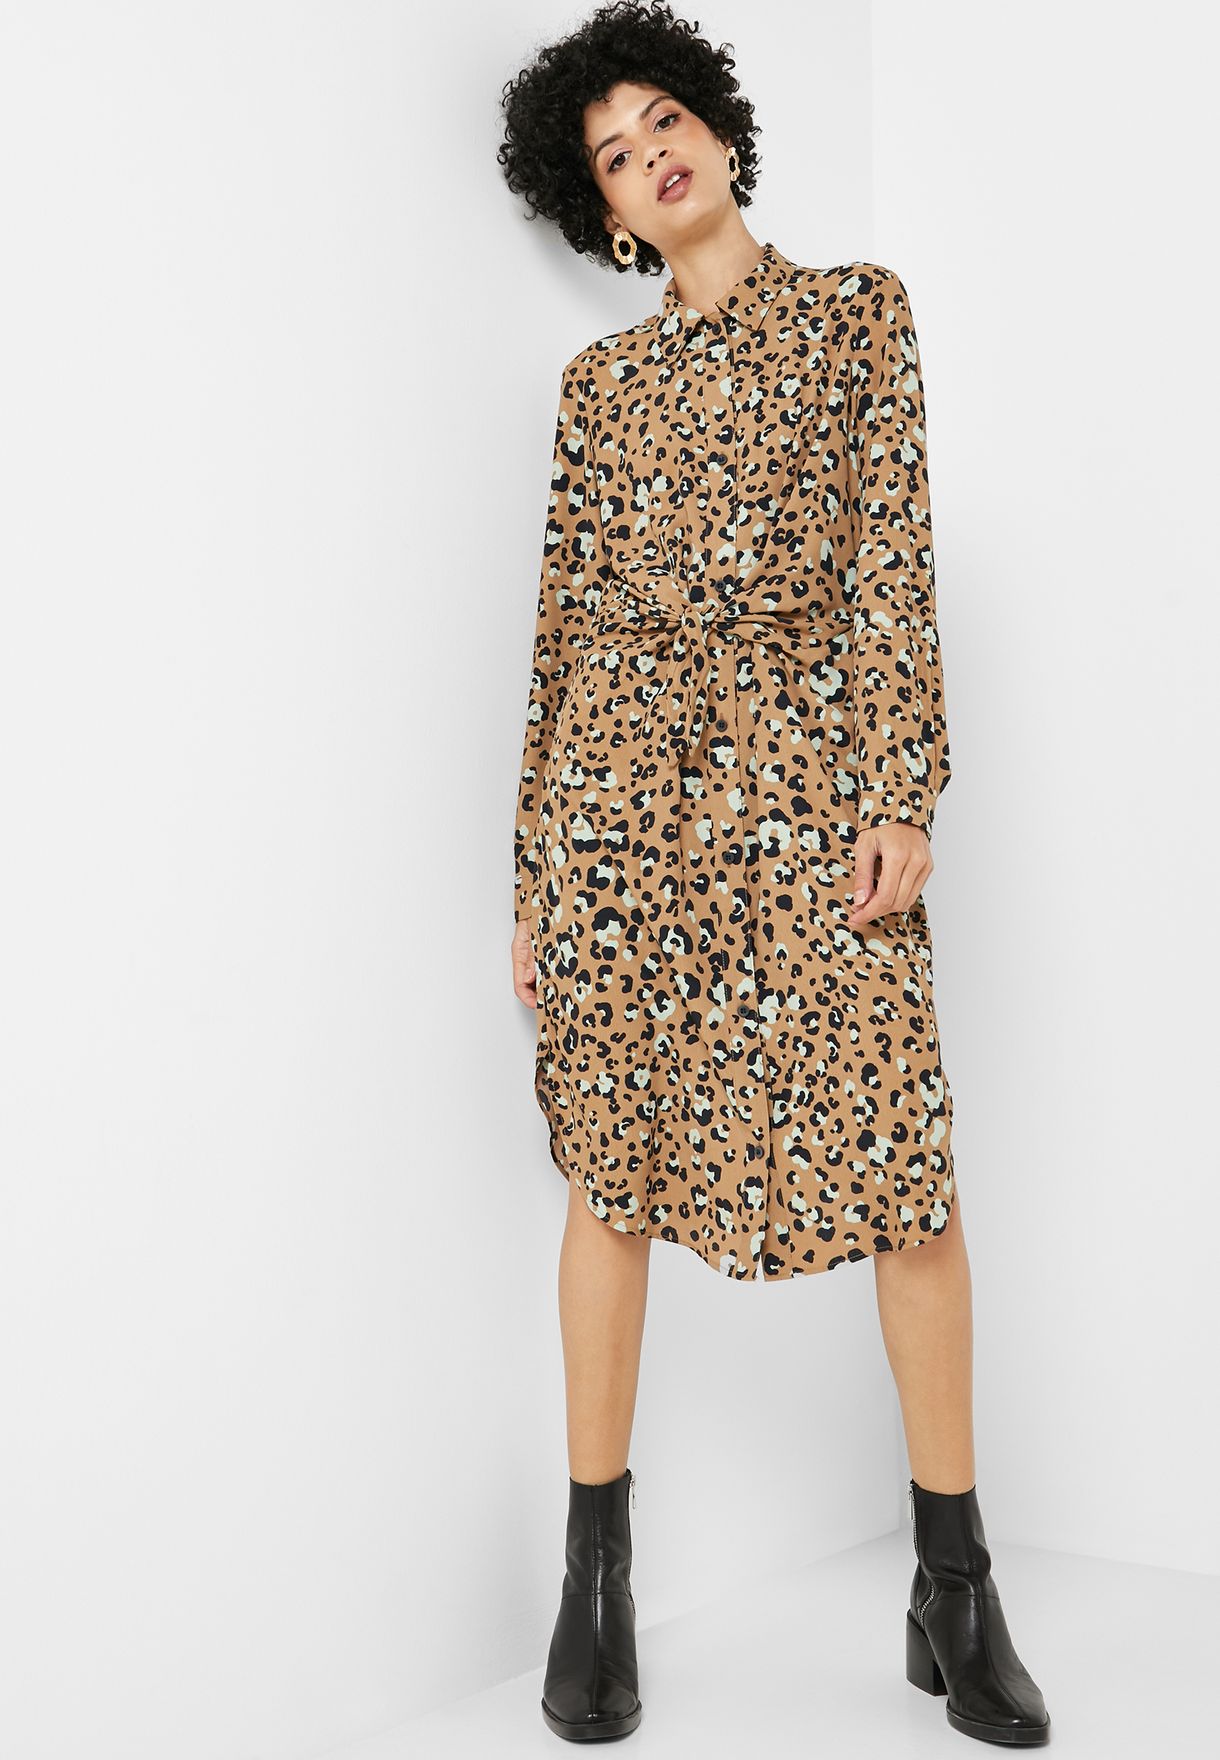 leopard print dress mango